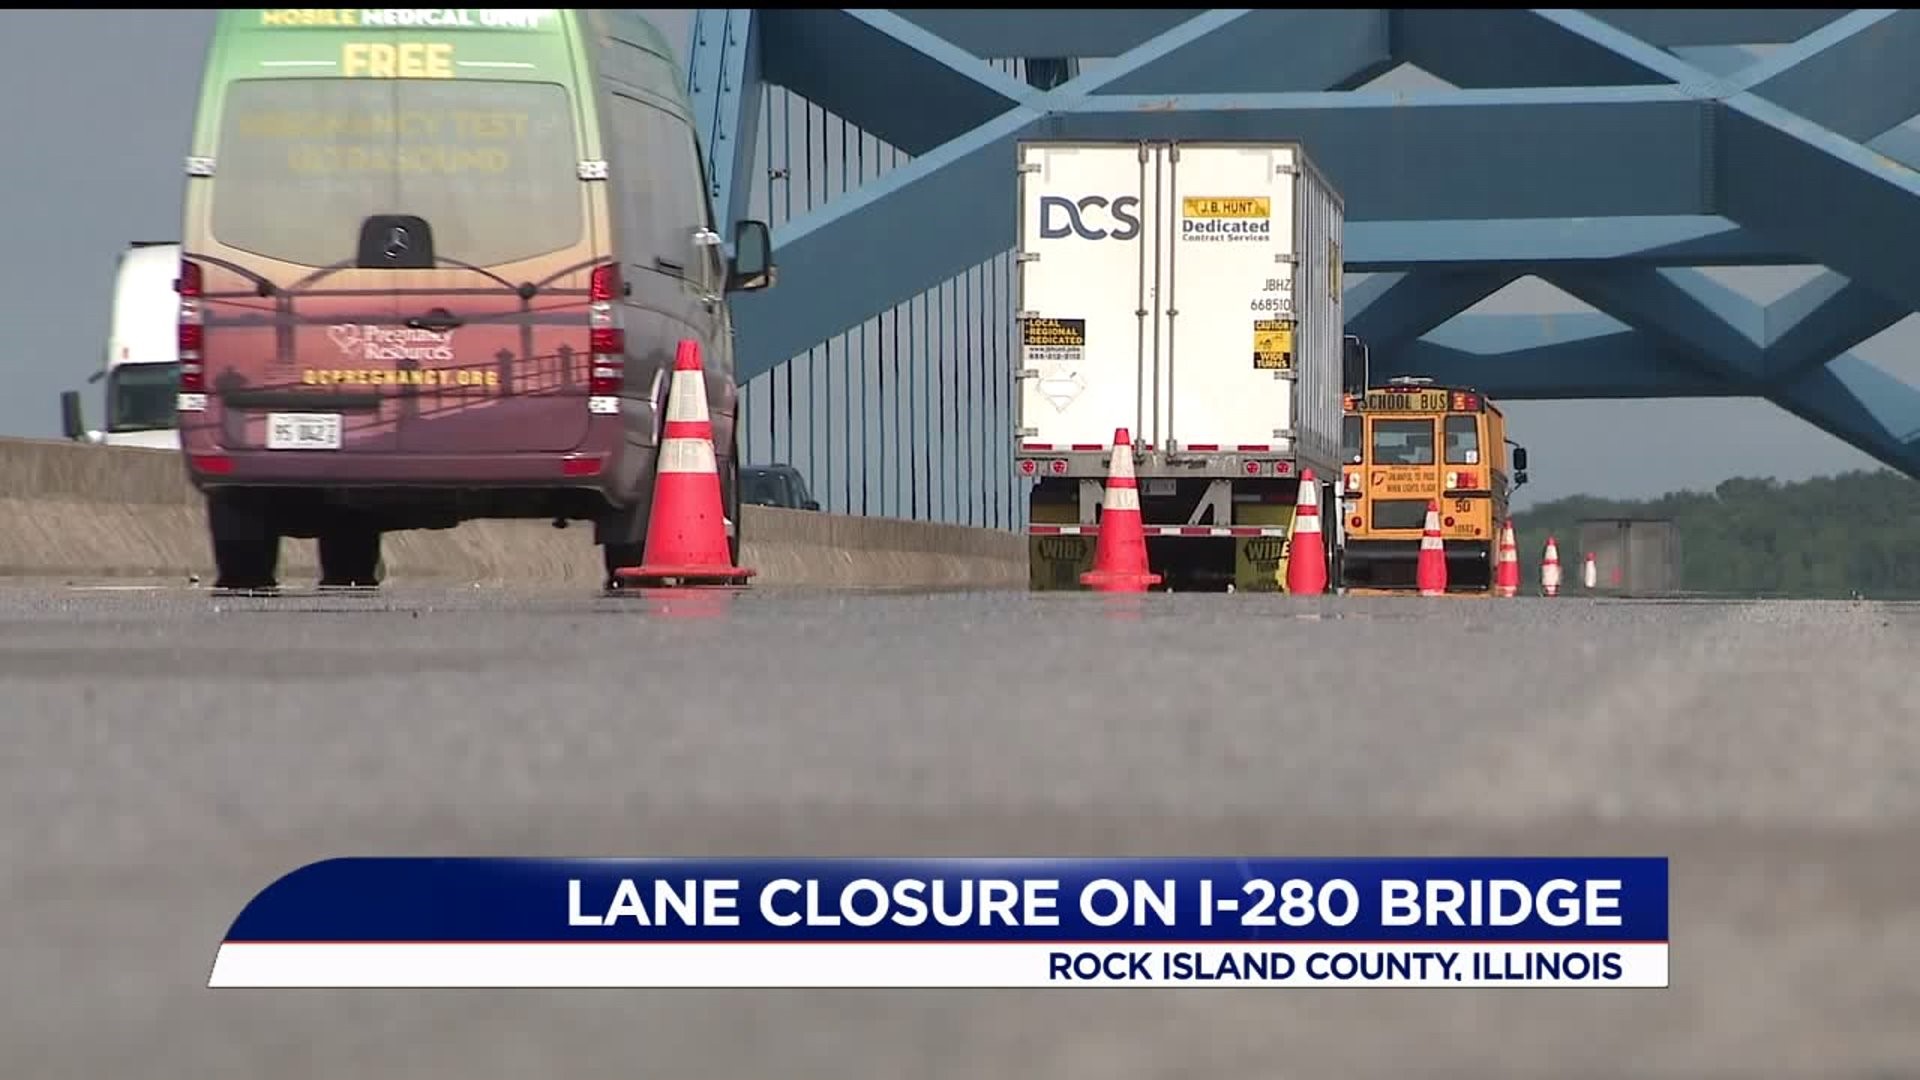 I-280 bridge lane closures